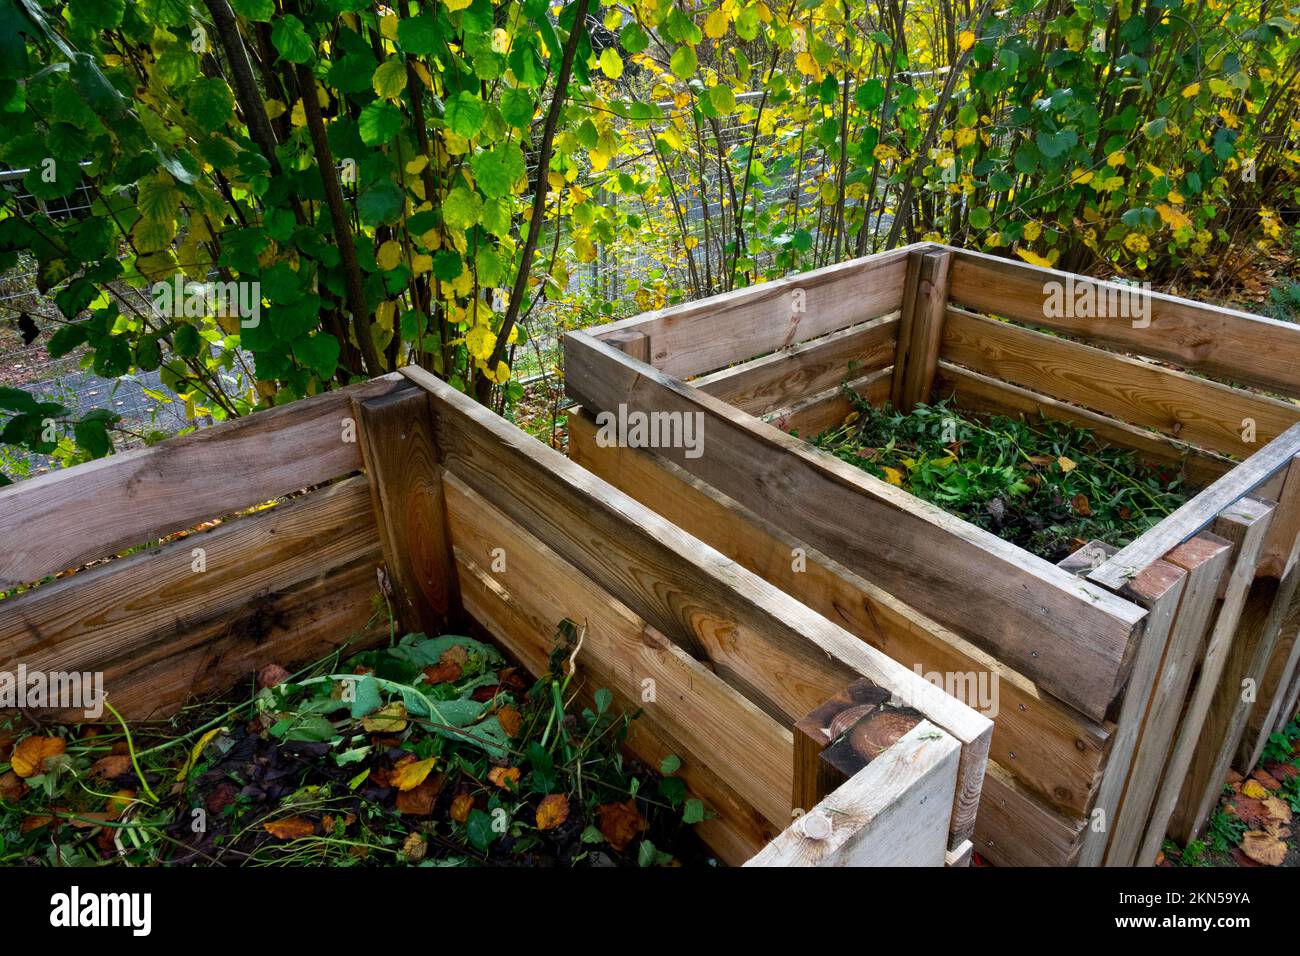 Allot giardino composter all'aperto, due composters in legno in un giardino d'autunno fare biologicamente humus compostaggio scatola Foto Stock